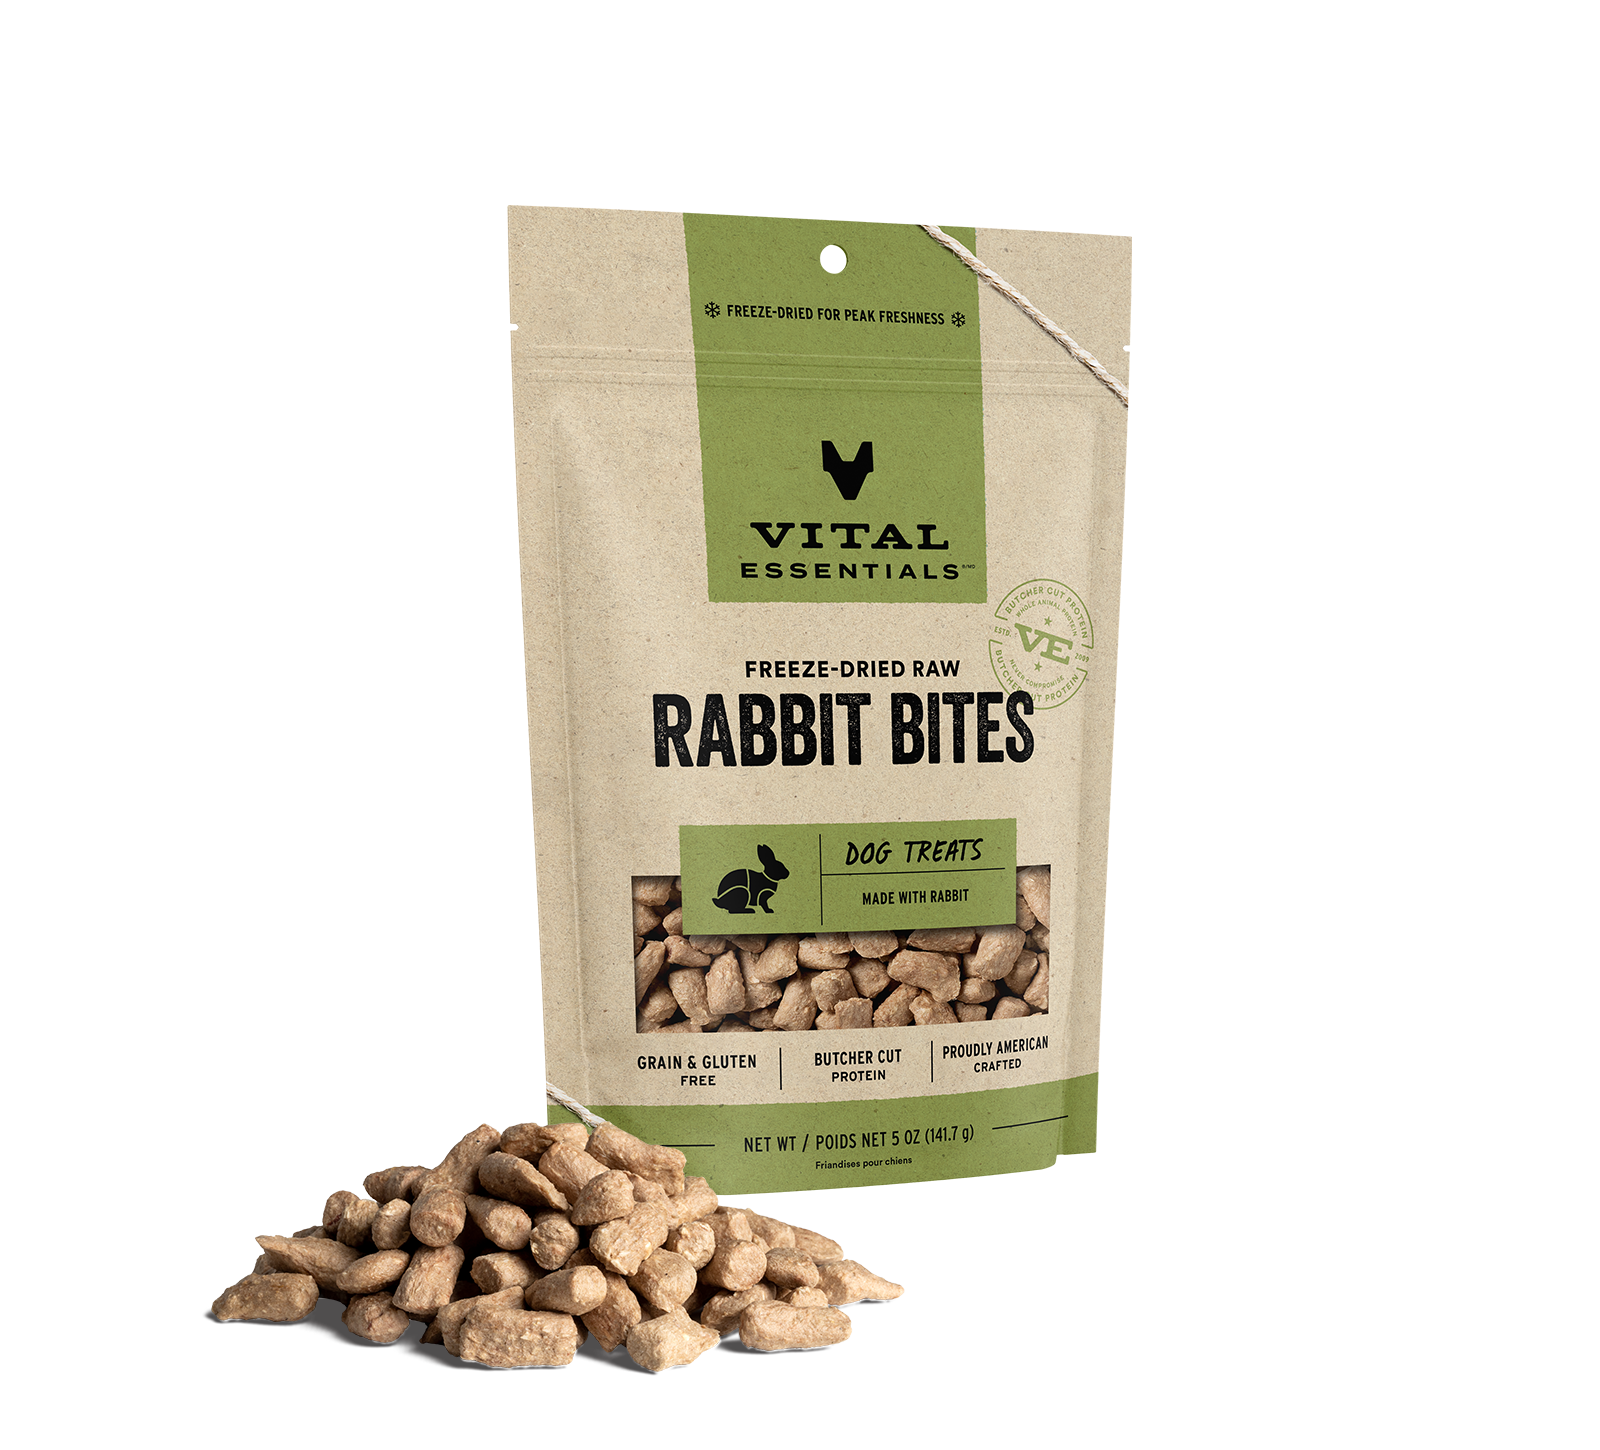 Vital Essentials Freeze-Dried Rabbit Bites Dog Treats, 5 oz - Health/First Aid